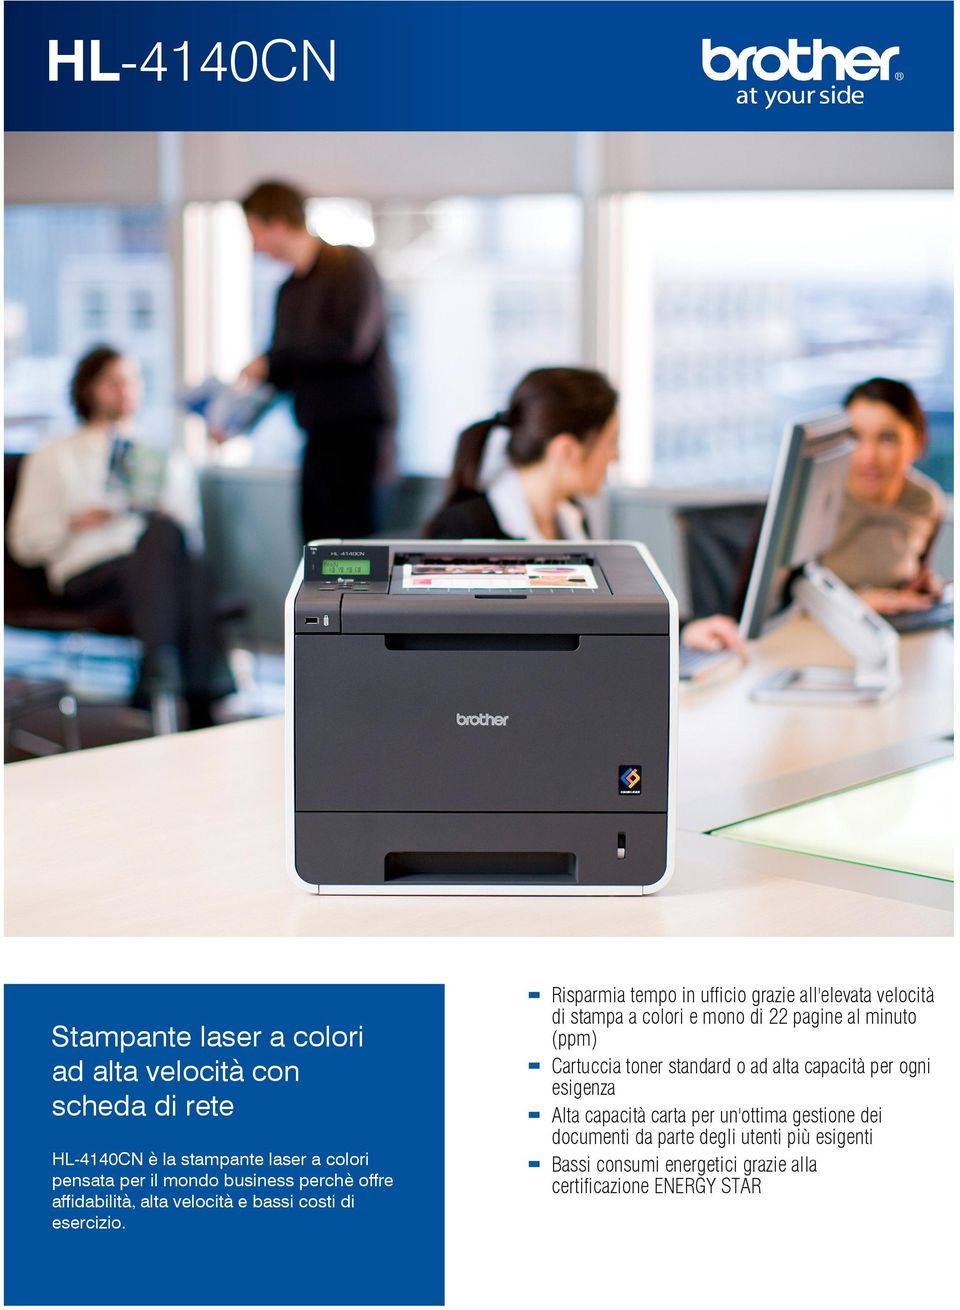 Risparmia tempo in ufficio grazie all'elevata velocità di stampa a colori e mono di 22 pagine al minuto (ppm) Cartuccia toner standard